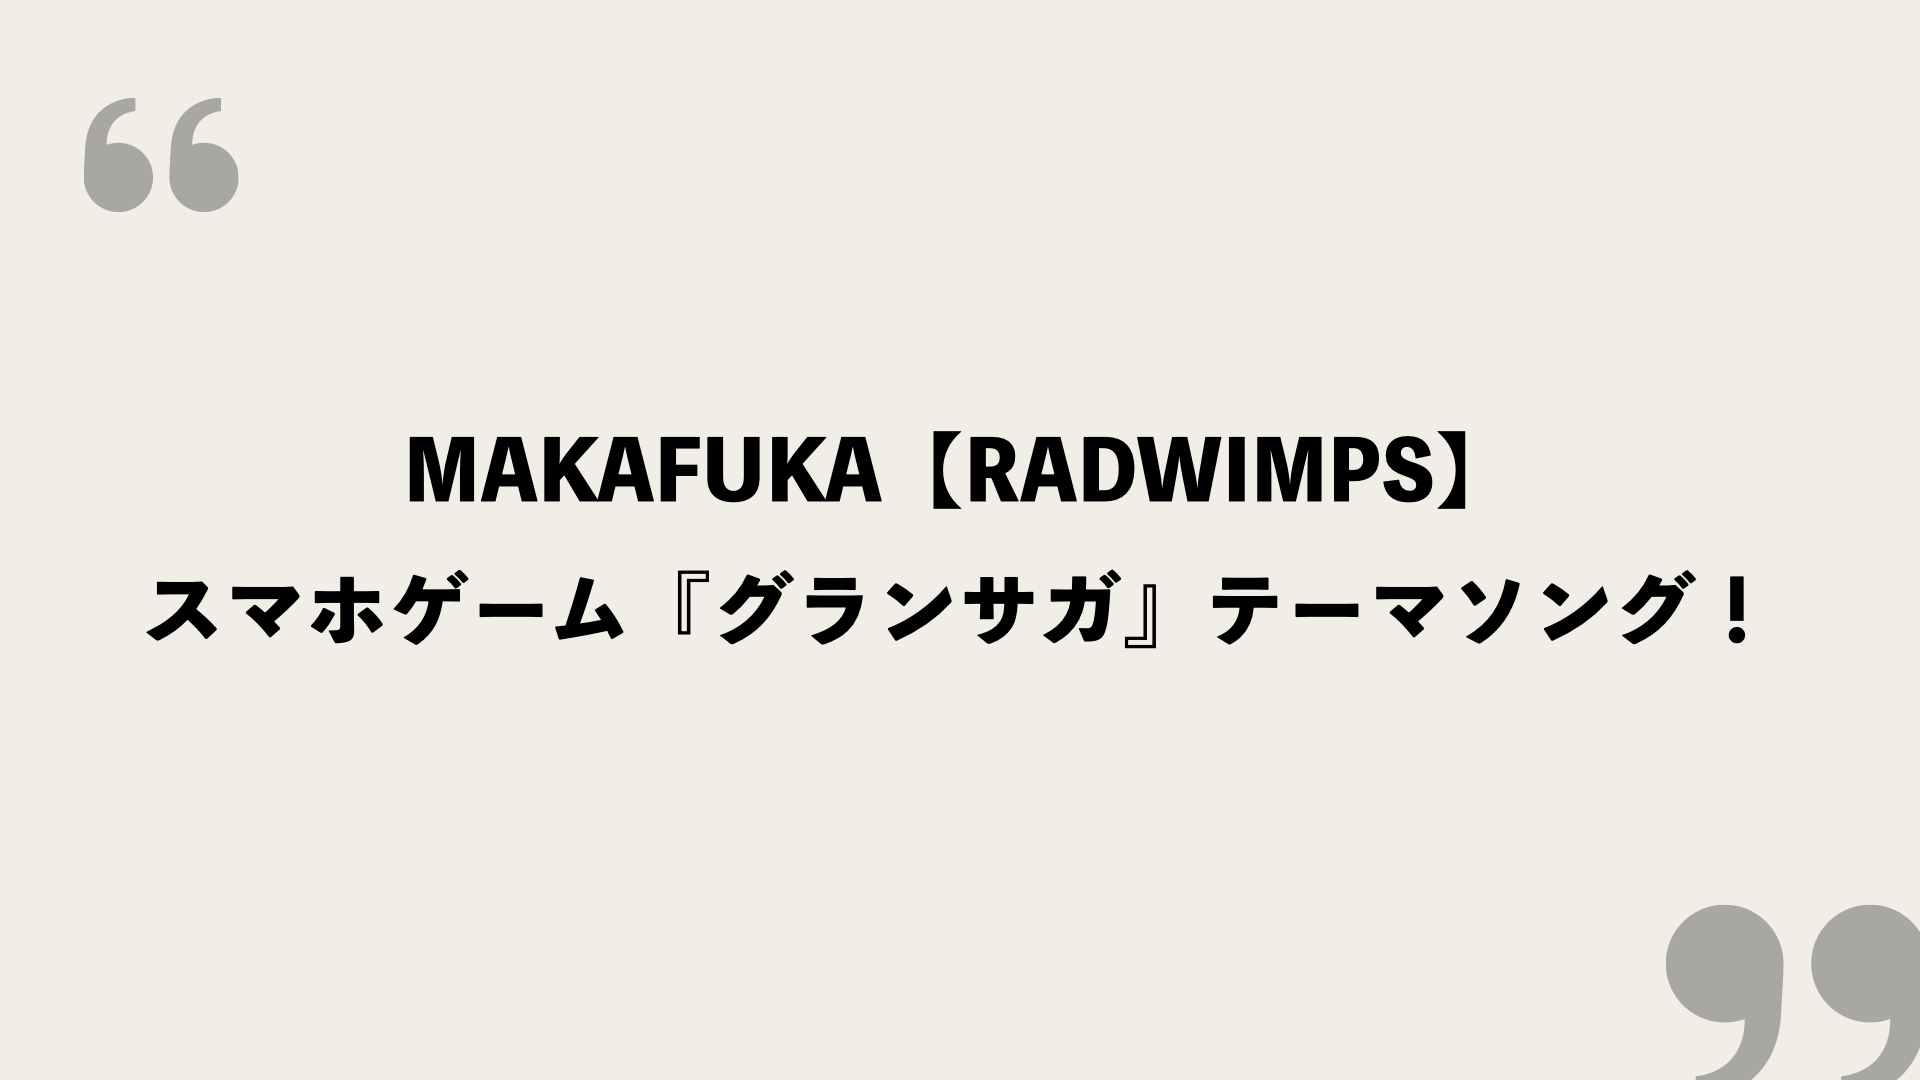 Makafuka Radwimps 歌詞の意味を考察 スマホゲーム グランサガ テーマソング Framu Media